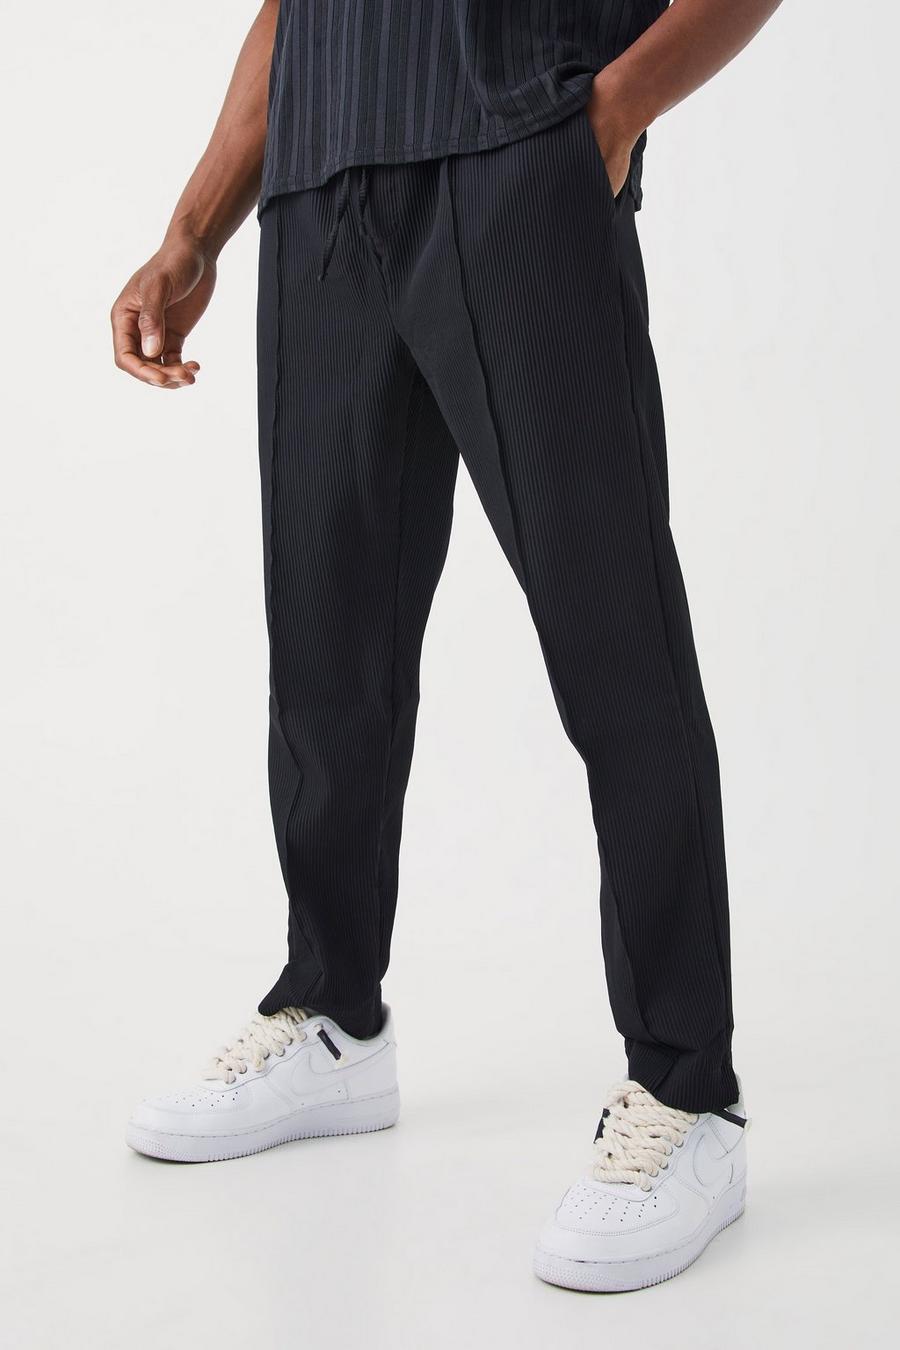 Pantaloni a pieghe Slim Fit con vita elasticizzata, Black negro